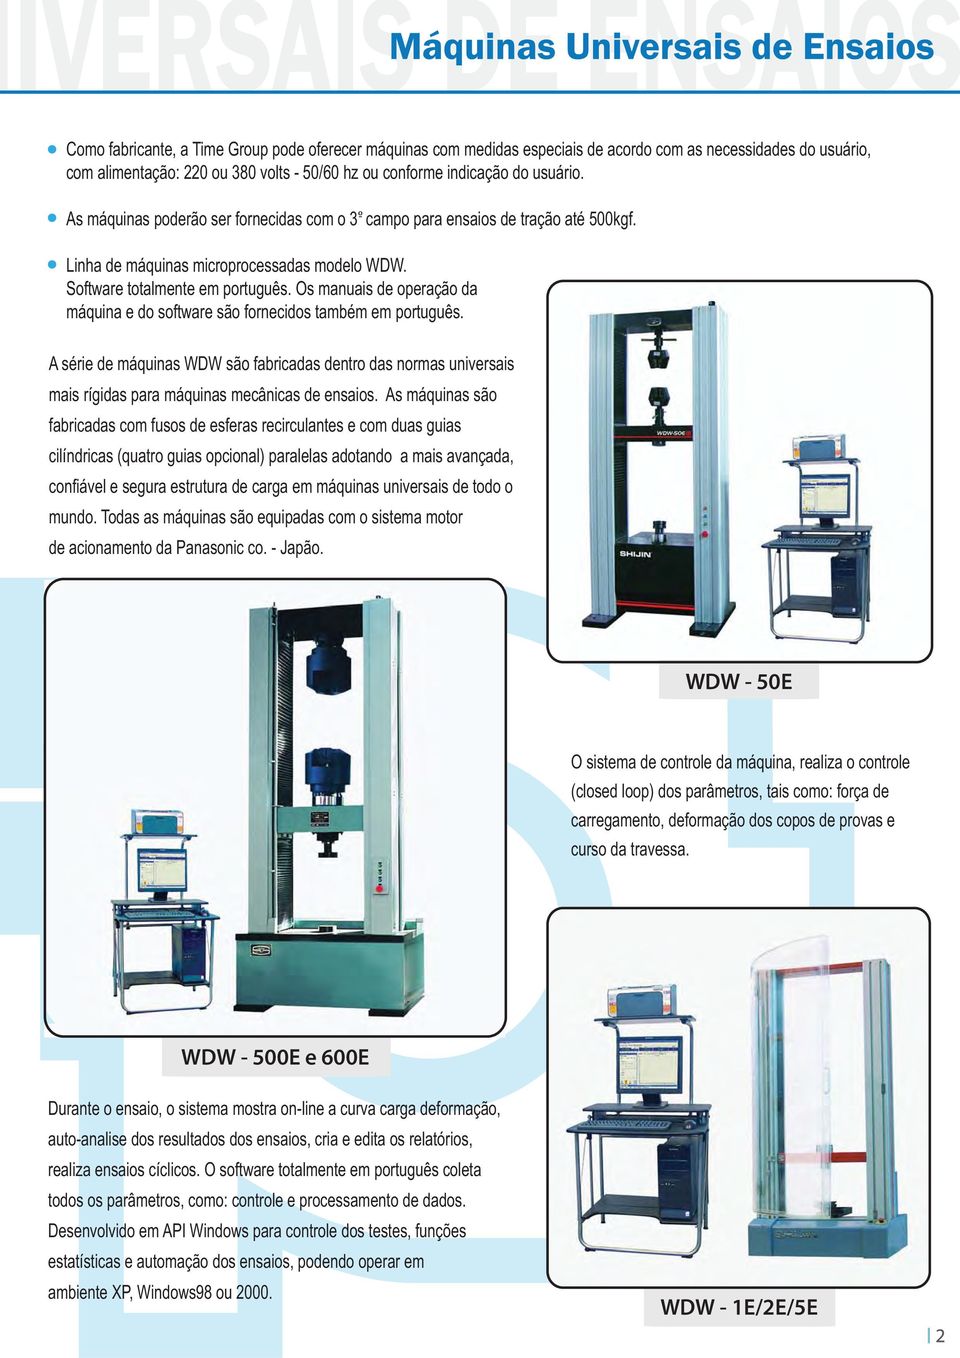 Os manuais de operação da máquina e do software são fornecidos também em português. A série de máquinas WDW são fabricadas dentro das normas universais mais rígidas para máquinas mecânicas de ensaios.